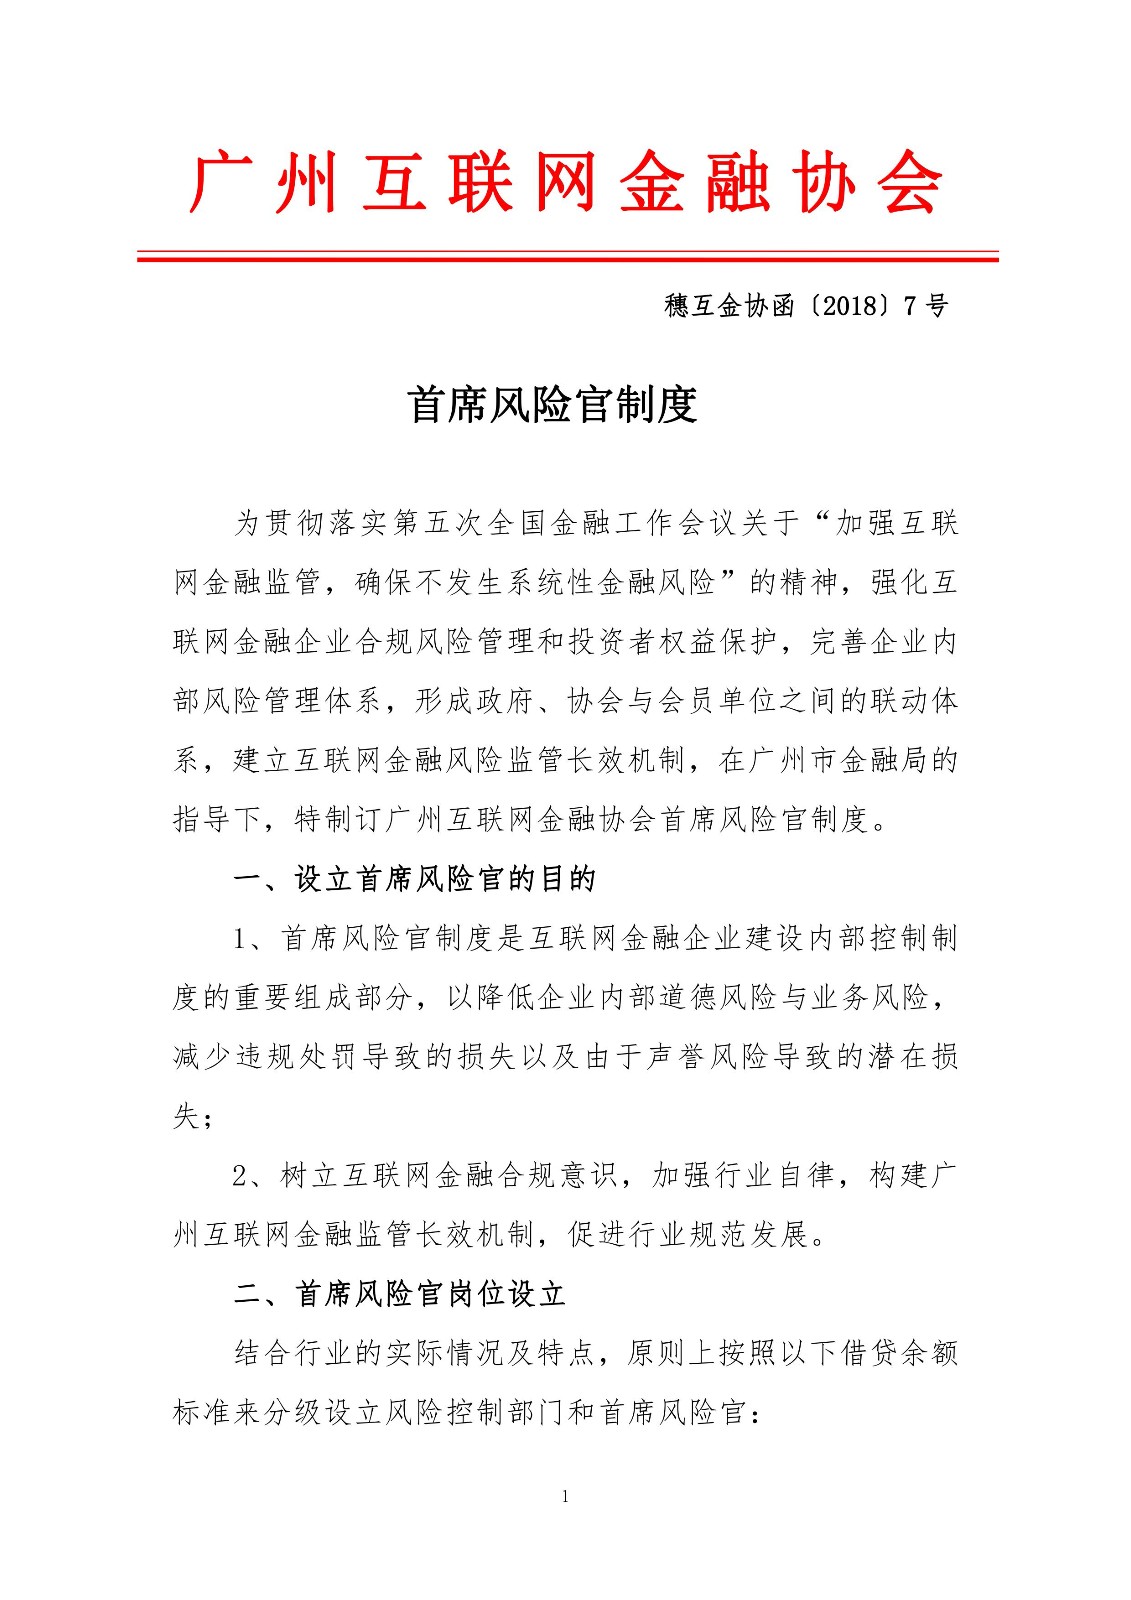 广州下发首席风险官制度 相关工作必须5年以上2